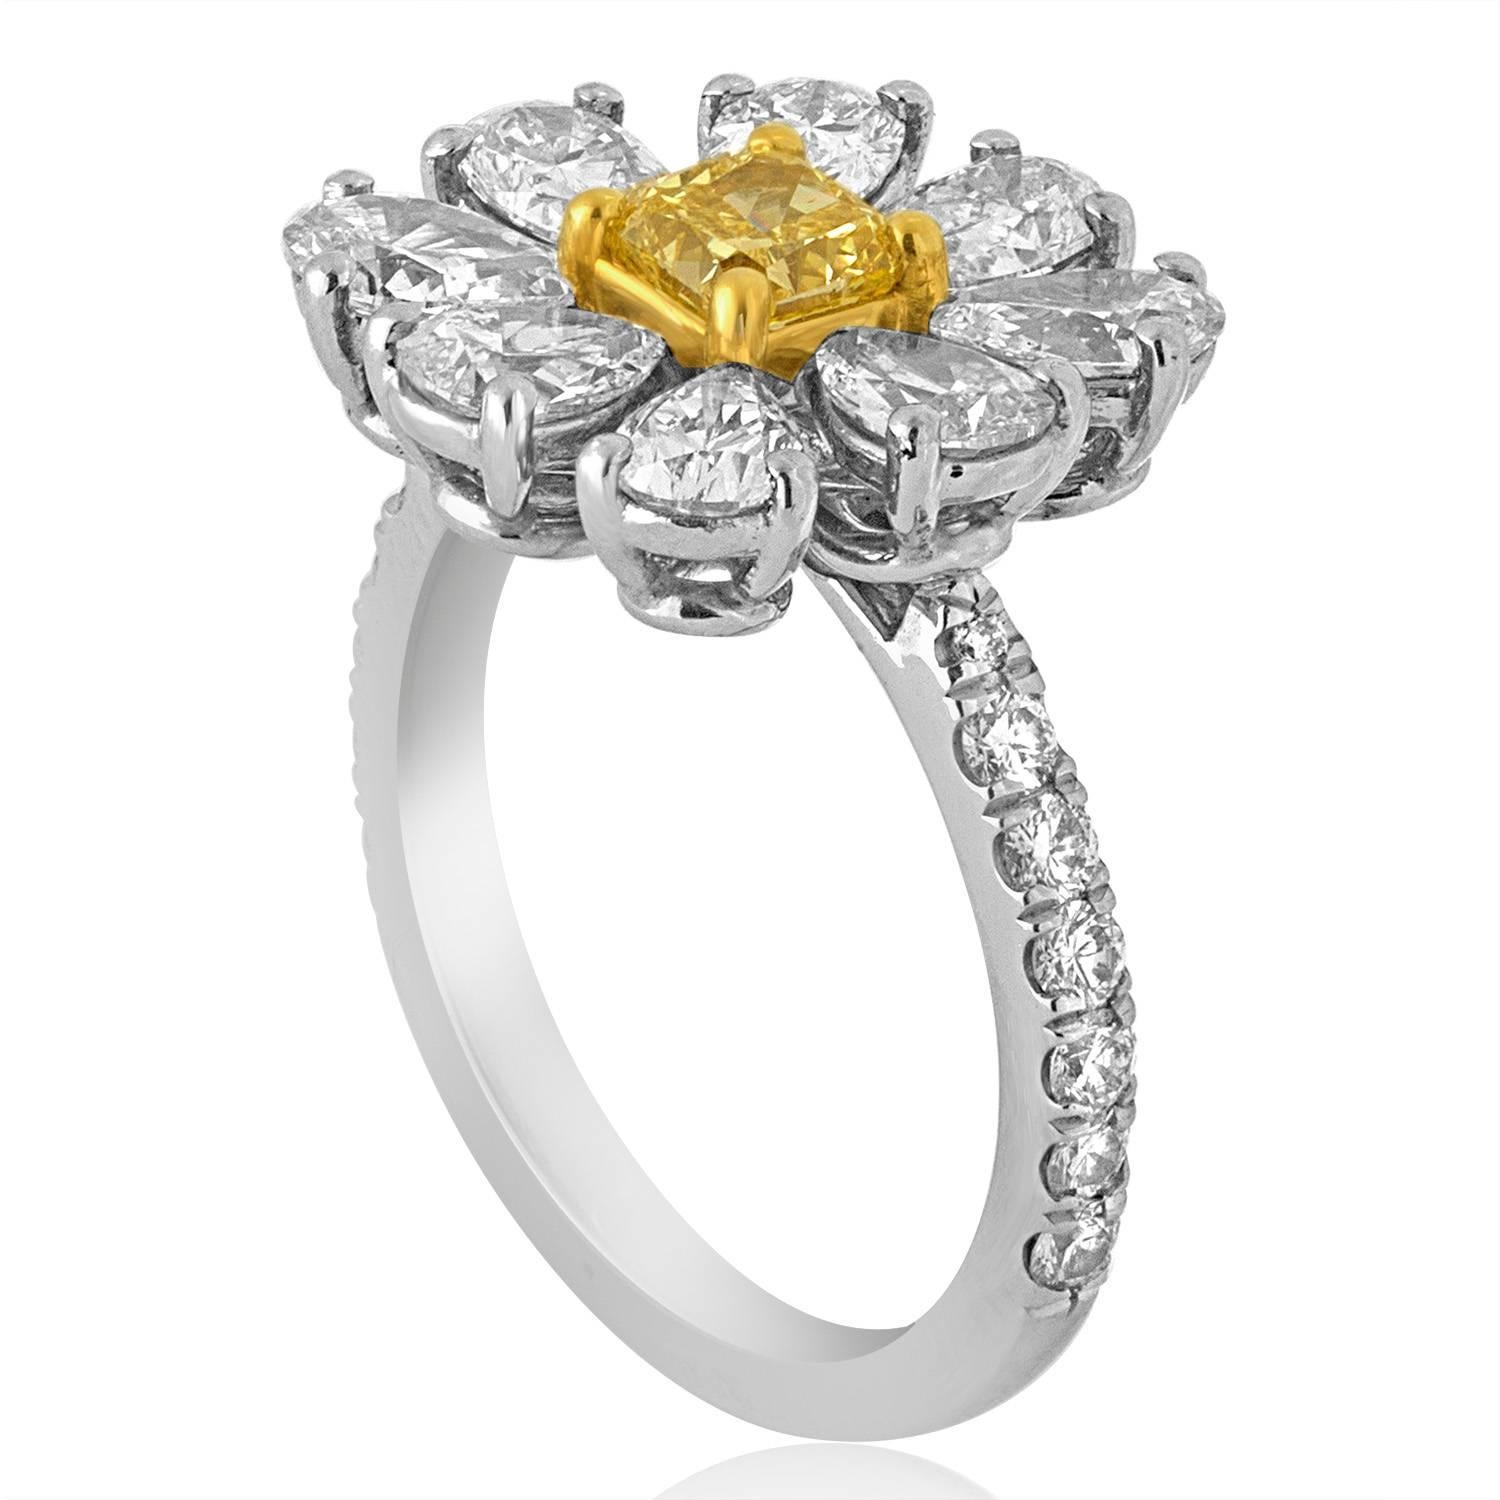 Gänseblümchen-Ring.
Der Ring ist aus Platin 950 und 18K Gelbgold.
Der Mittelstein ist 0,87 Karat FANCY INTENSE YELLOW VS.
Es sind insgesamt 1,92 Karat in Birnenform F VS.
Es gibt 0,32 Karat insgesamt in kleinen runden Diamanten F VS.
Der Ring ist